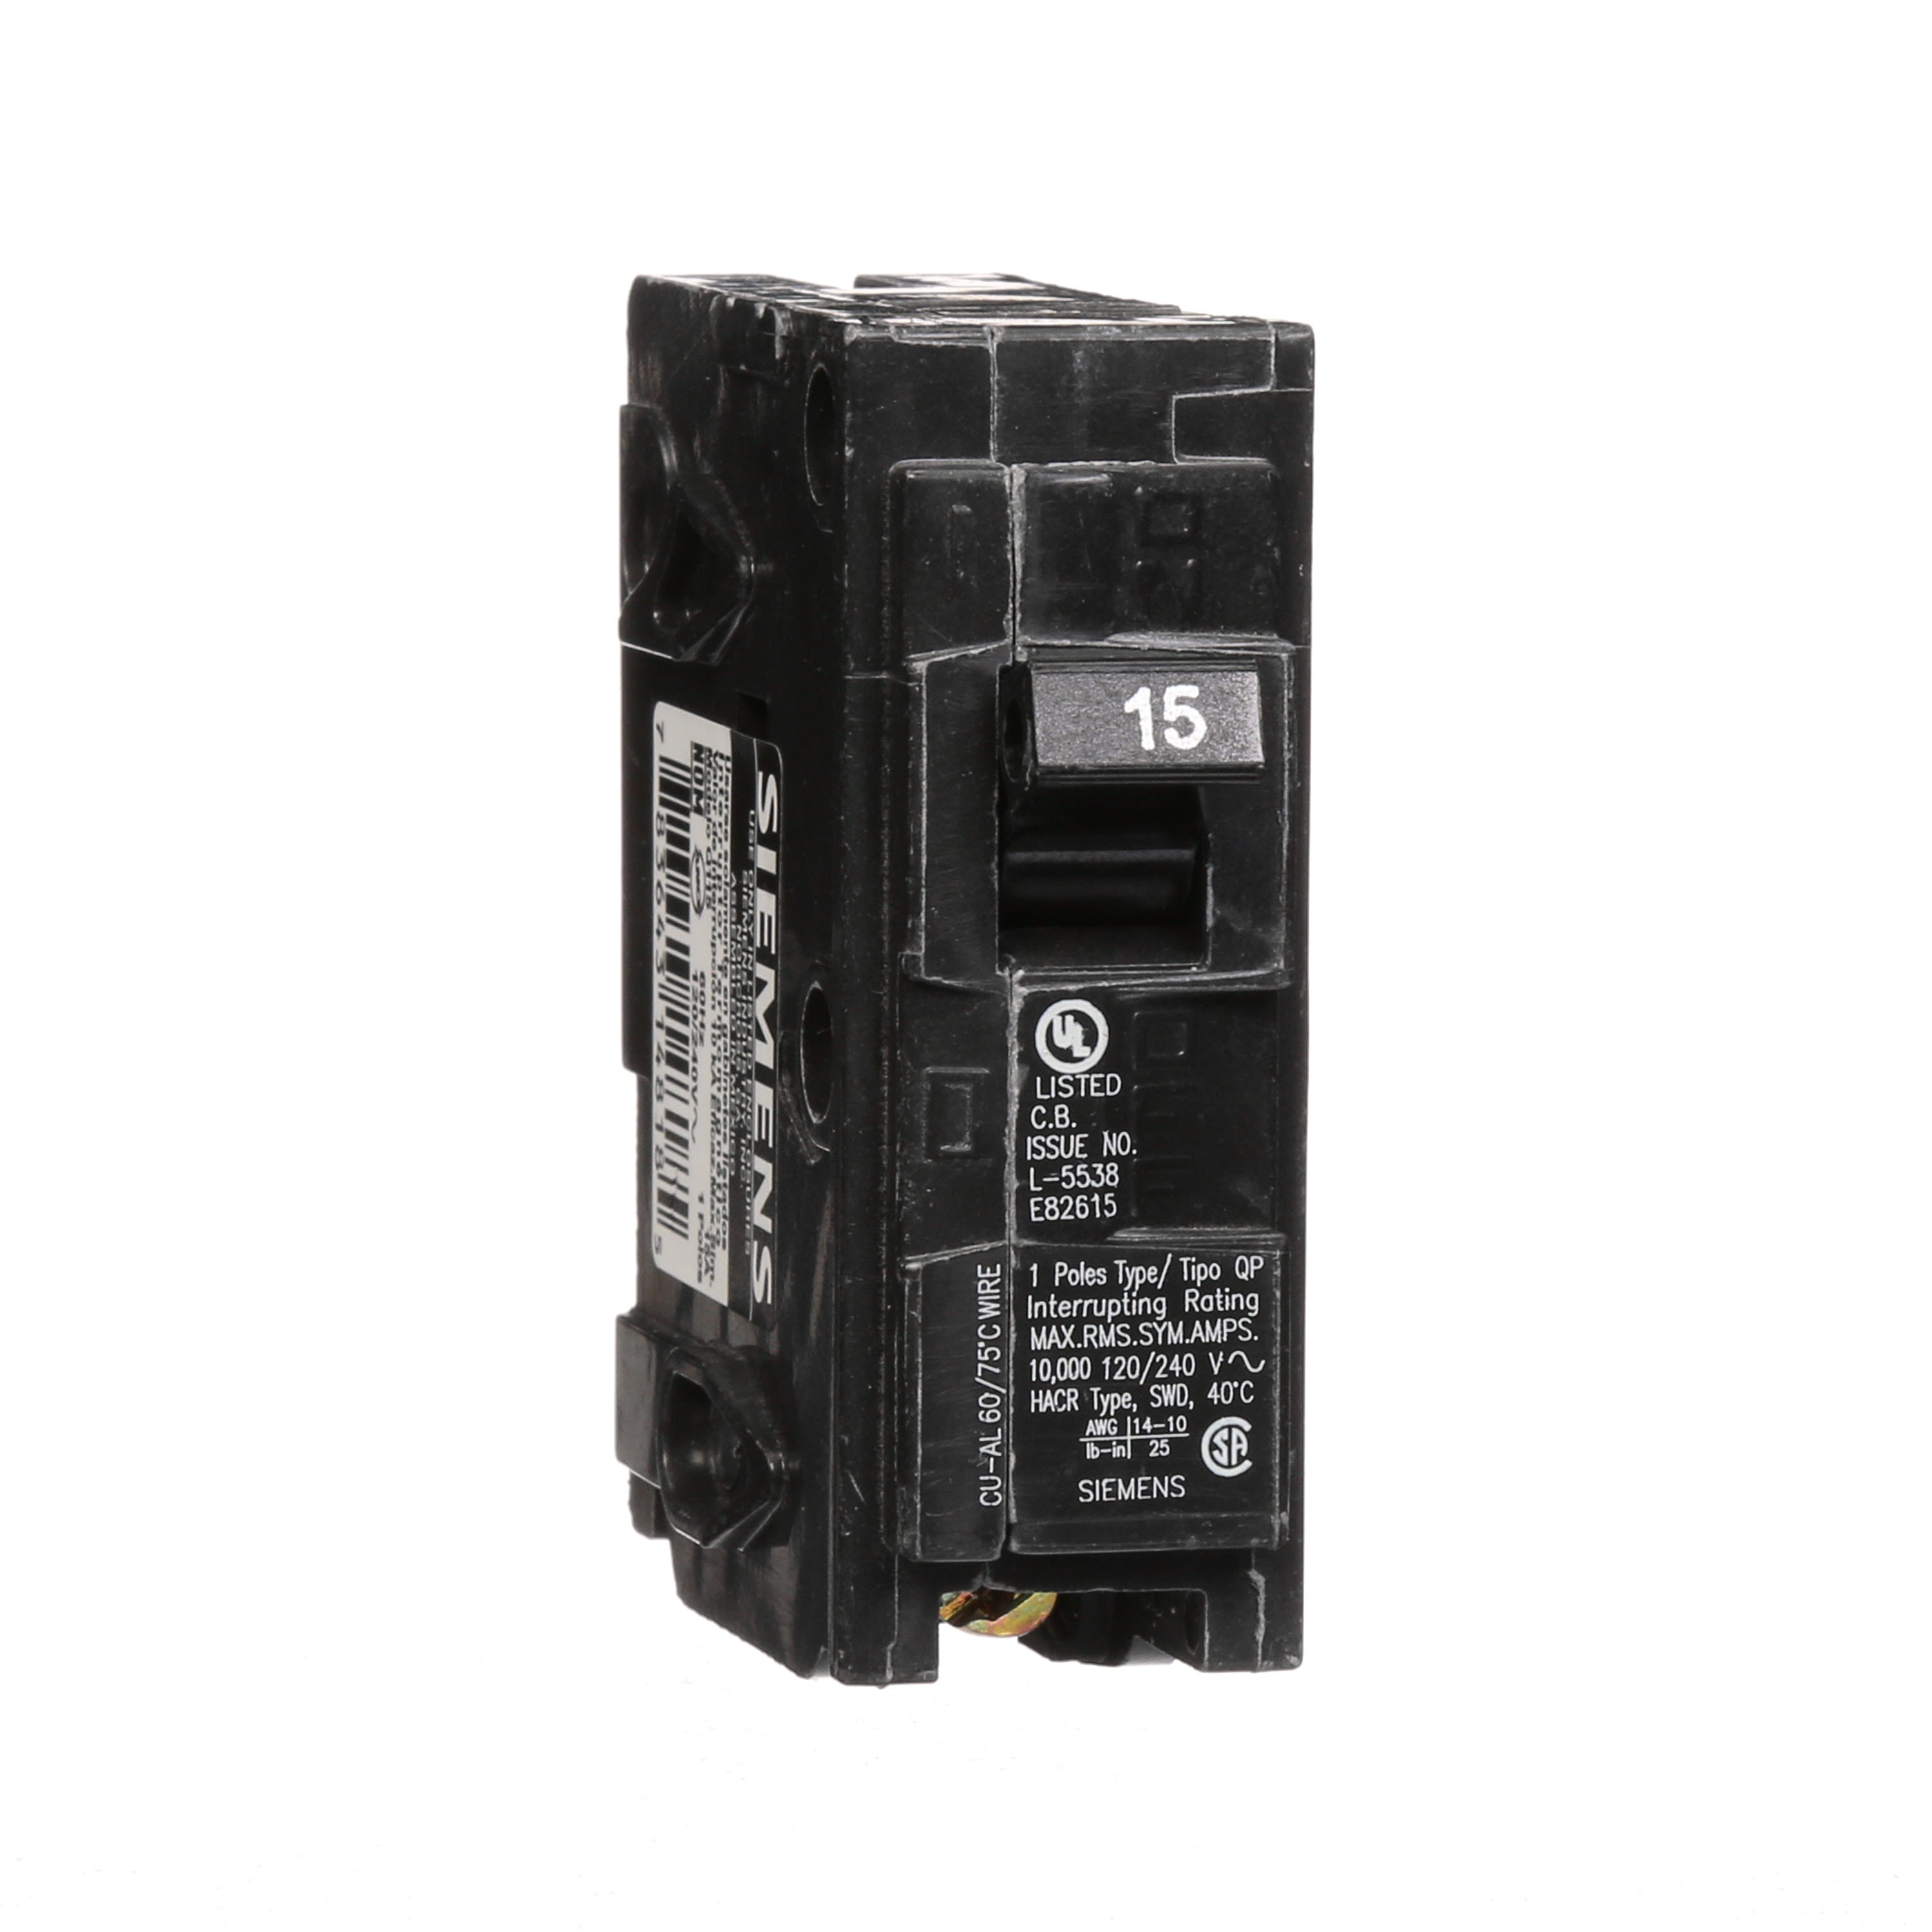 ITE 15 Amp Circuit Breaker No EF1B015 